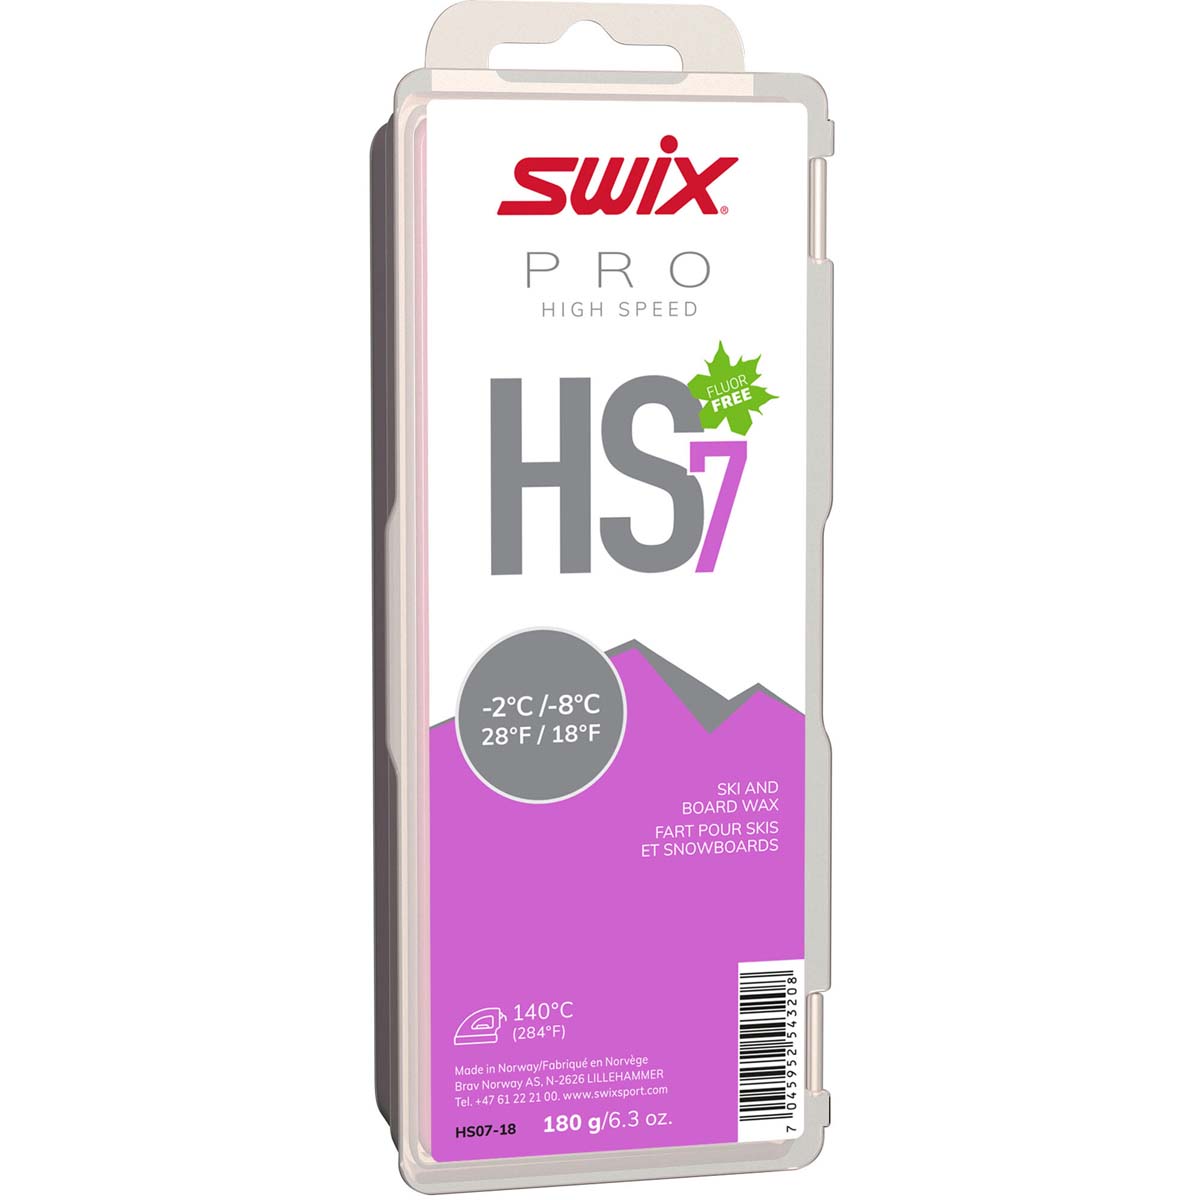 Skluzný vosk Swix High Speed, HS7 fialový,-2°C/-8°C,180g